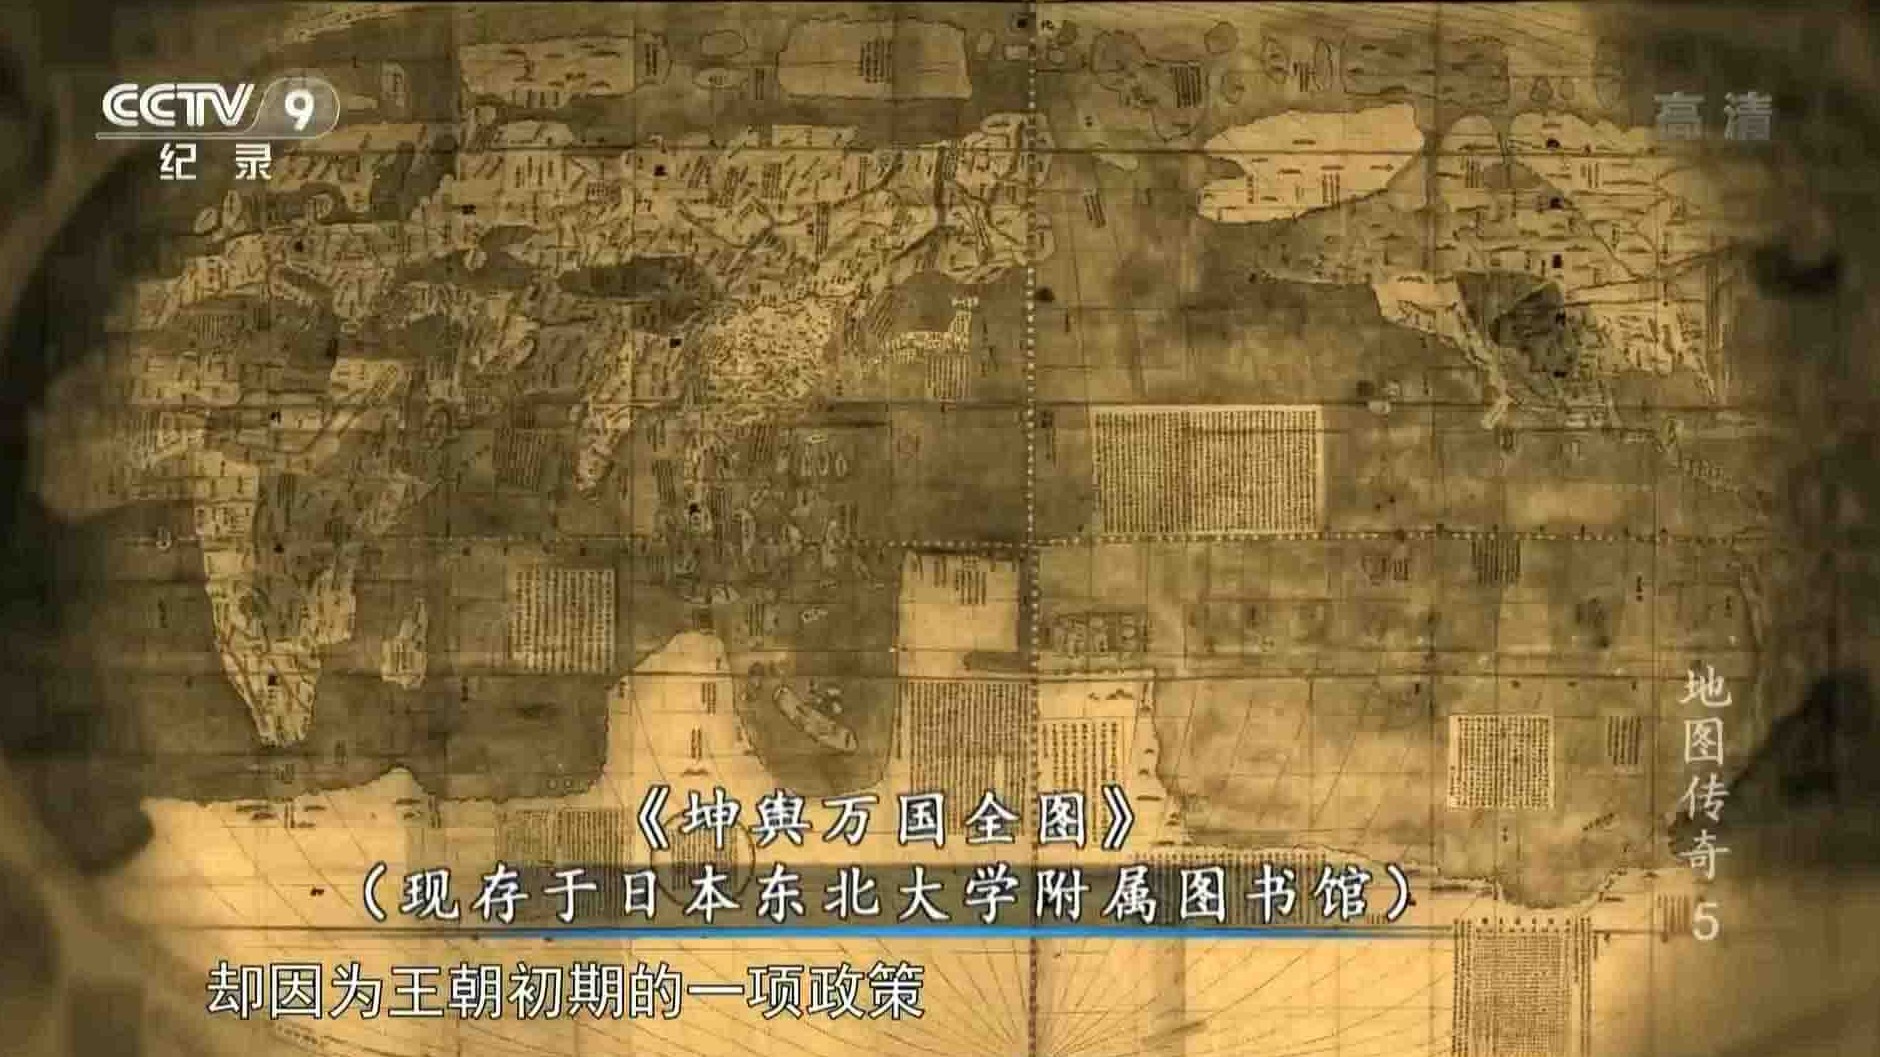 关于中国地图的纪录片《万象·地图传奇 The Legend of Maps》全8集 国语中字 1080P高清纪录片 